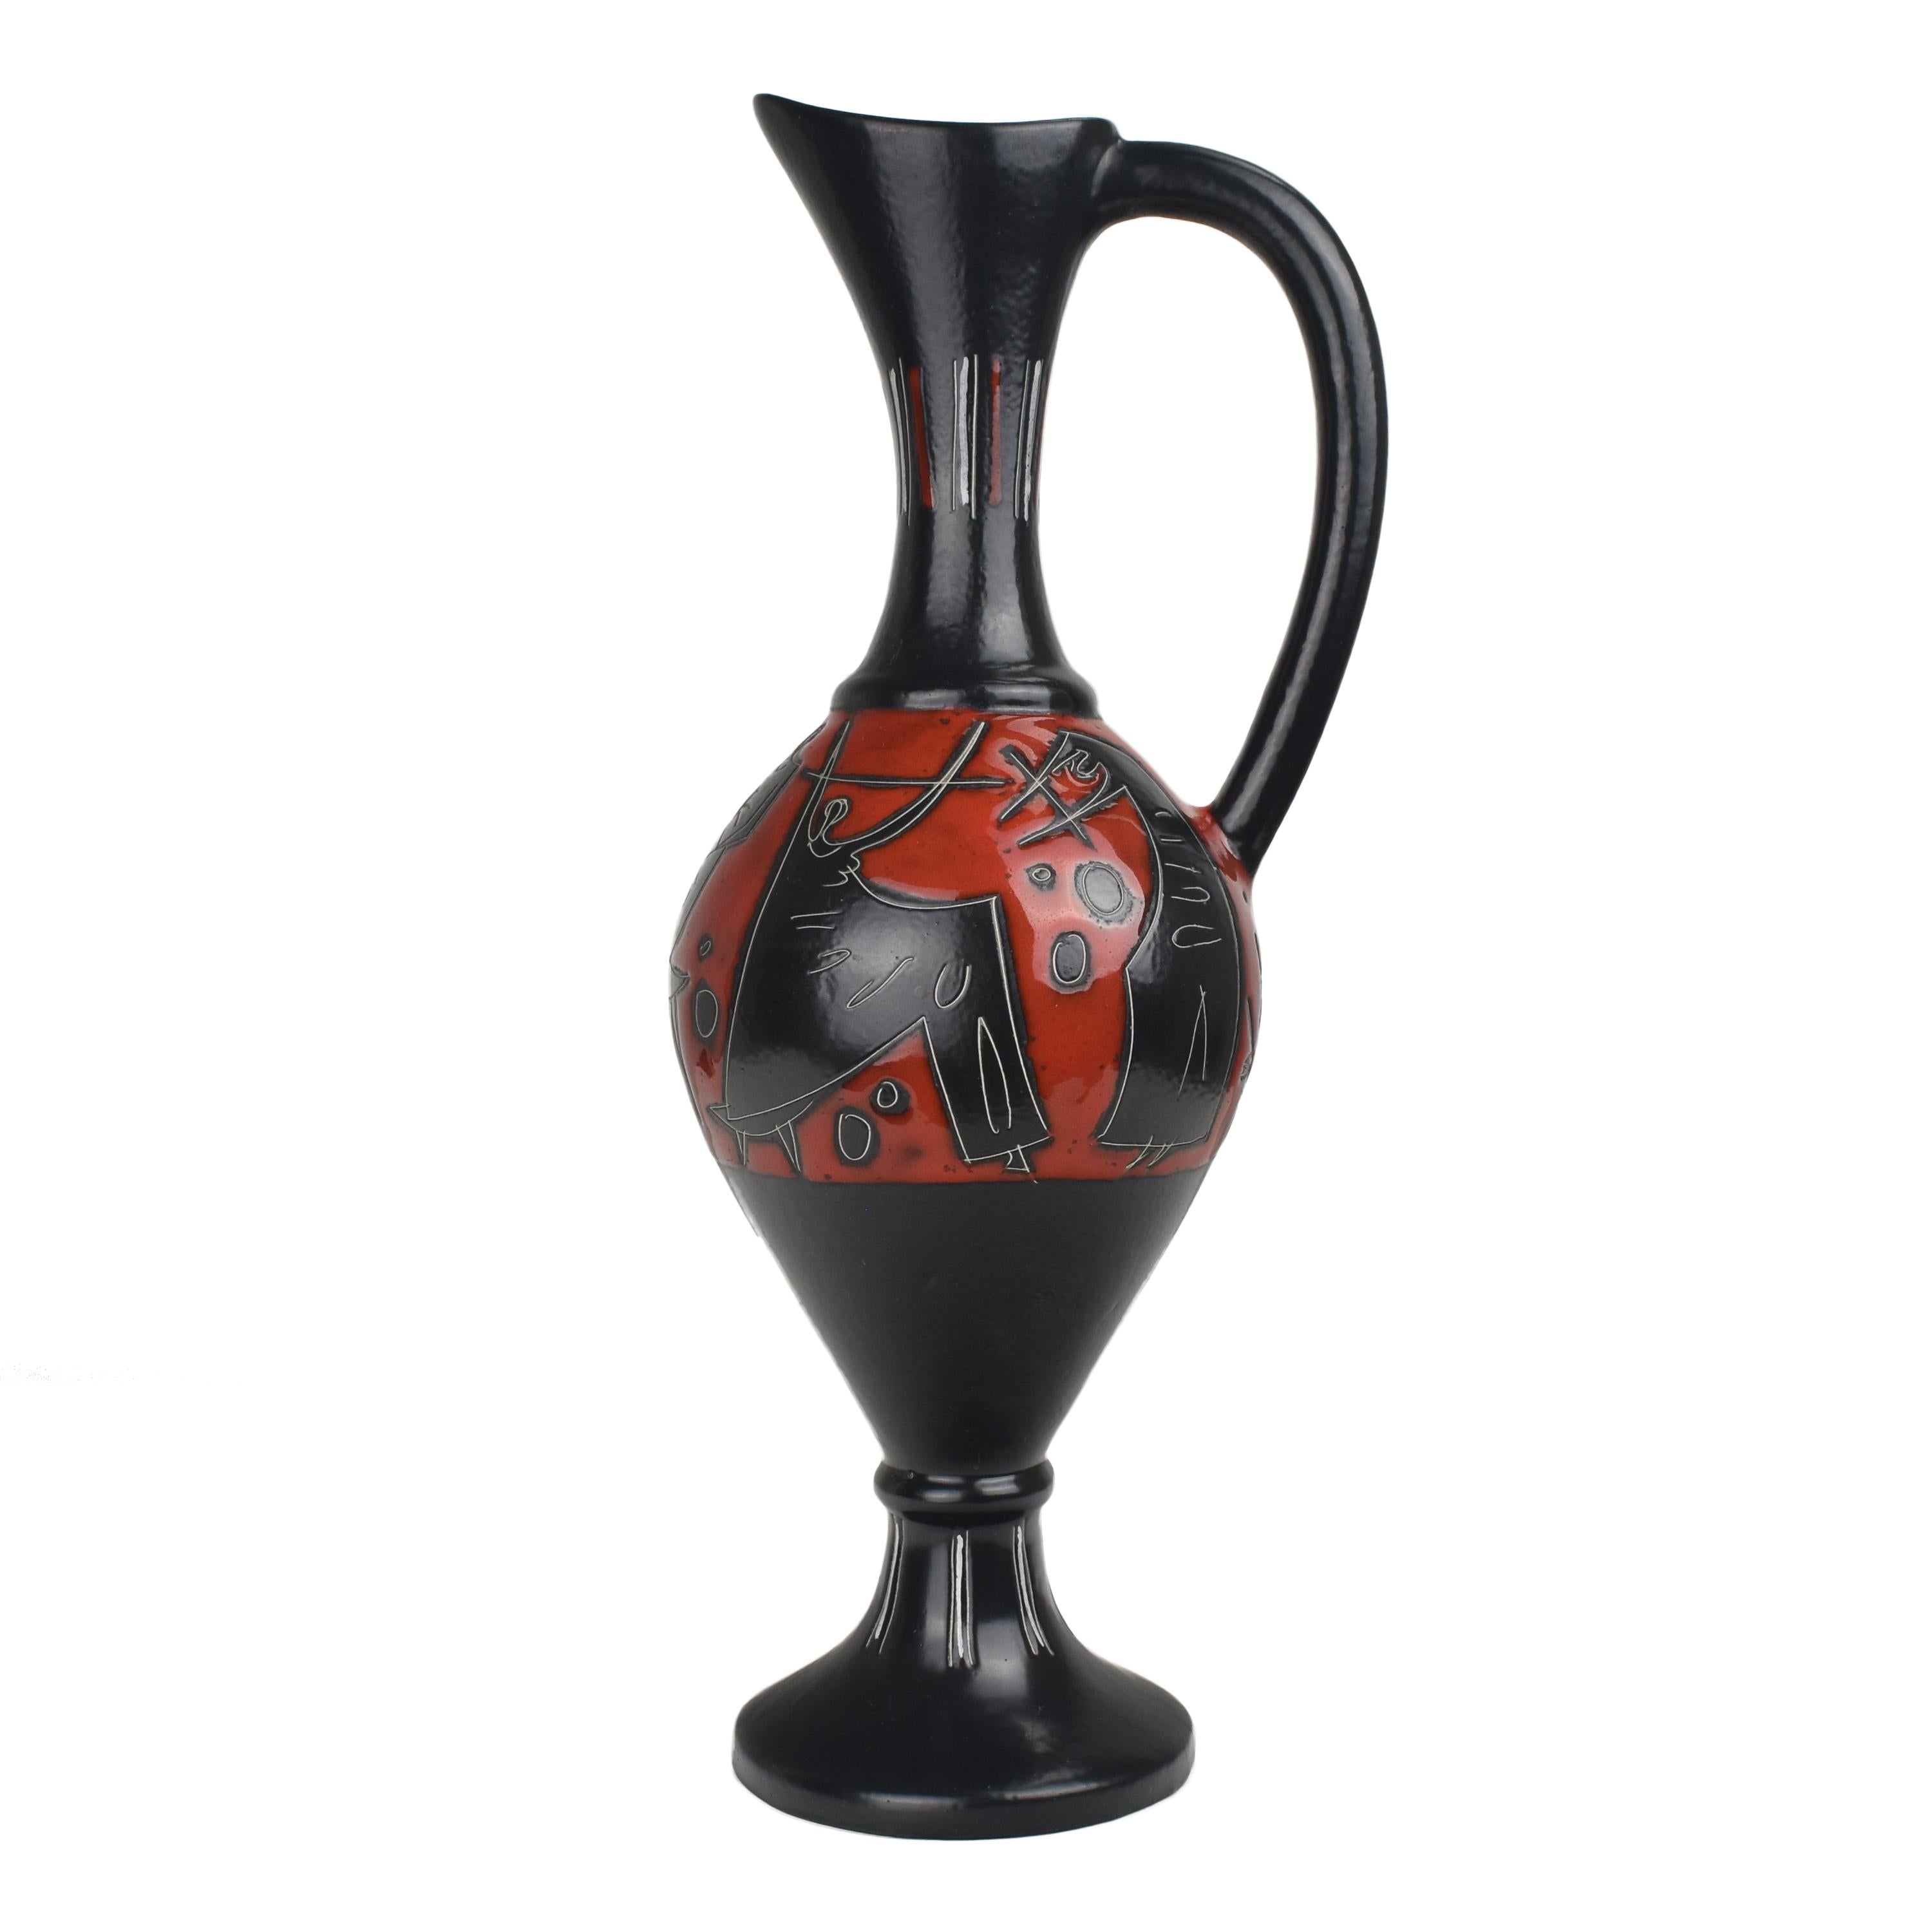 Le vase cruche en céramique vintage de Marcello Fantoni, datant des années 1960, est une pièce exceptionnelle et artistique qui illustre la maîtrise de la céramique italienne à cette époque. Marcello Fantoni était un céramiste et sculpteur italien